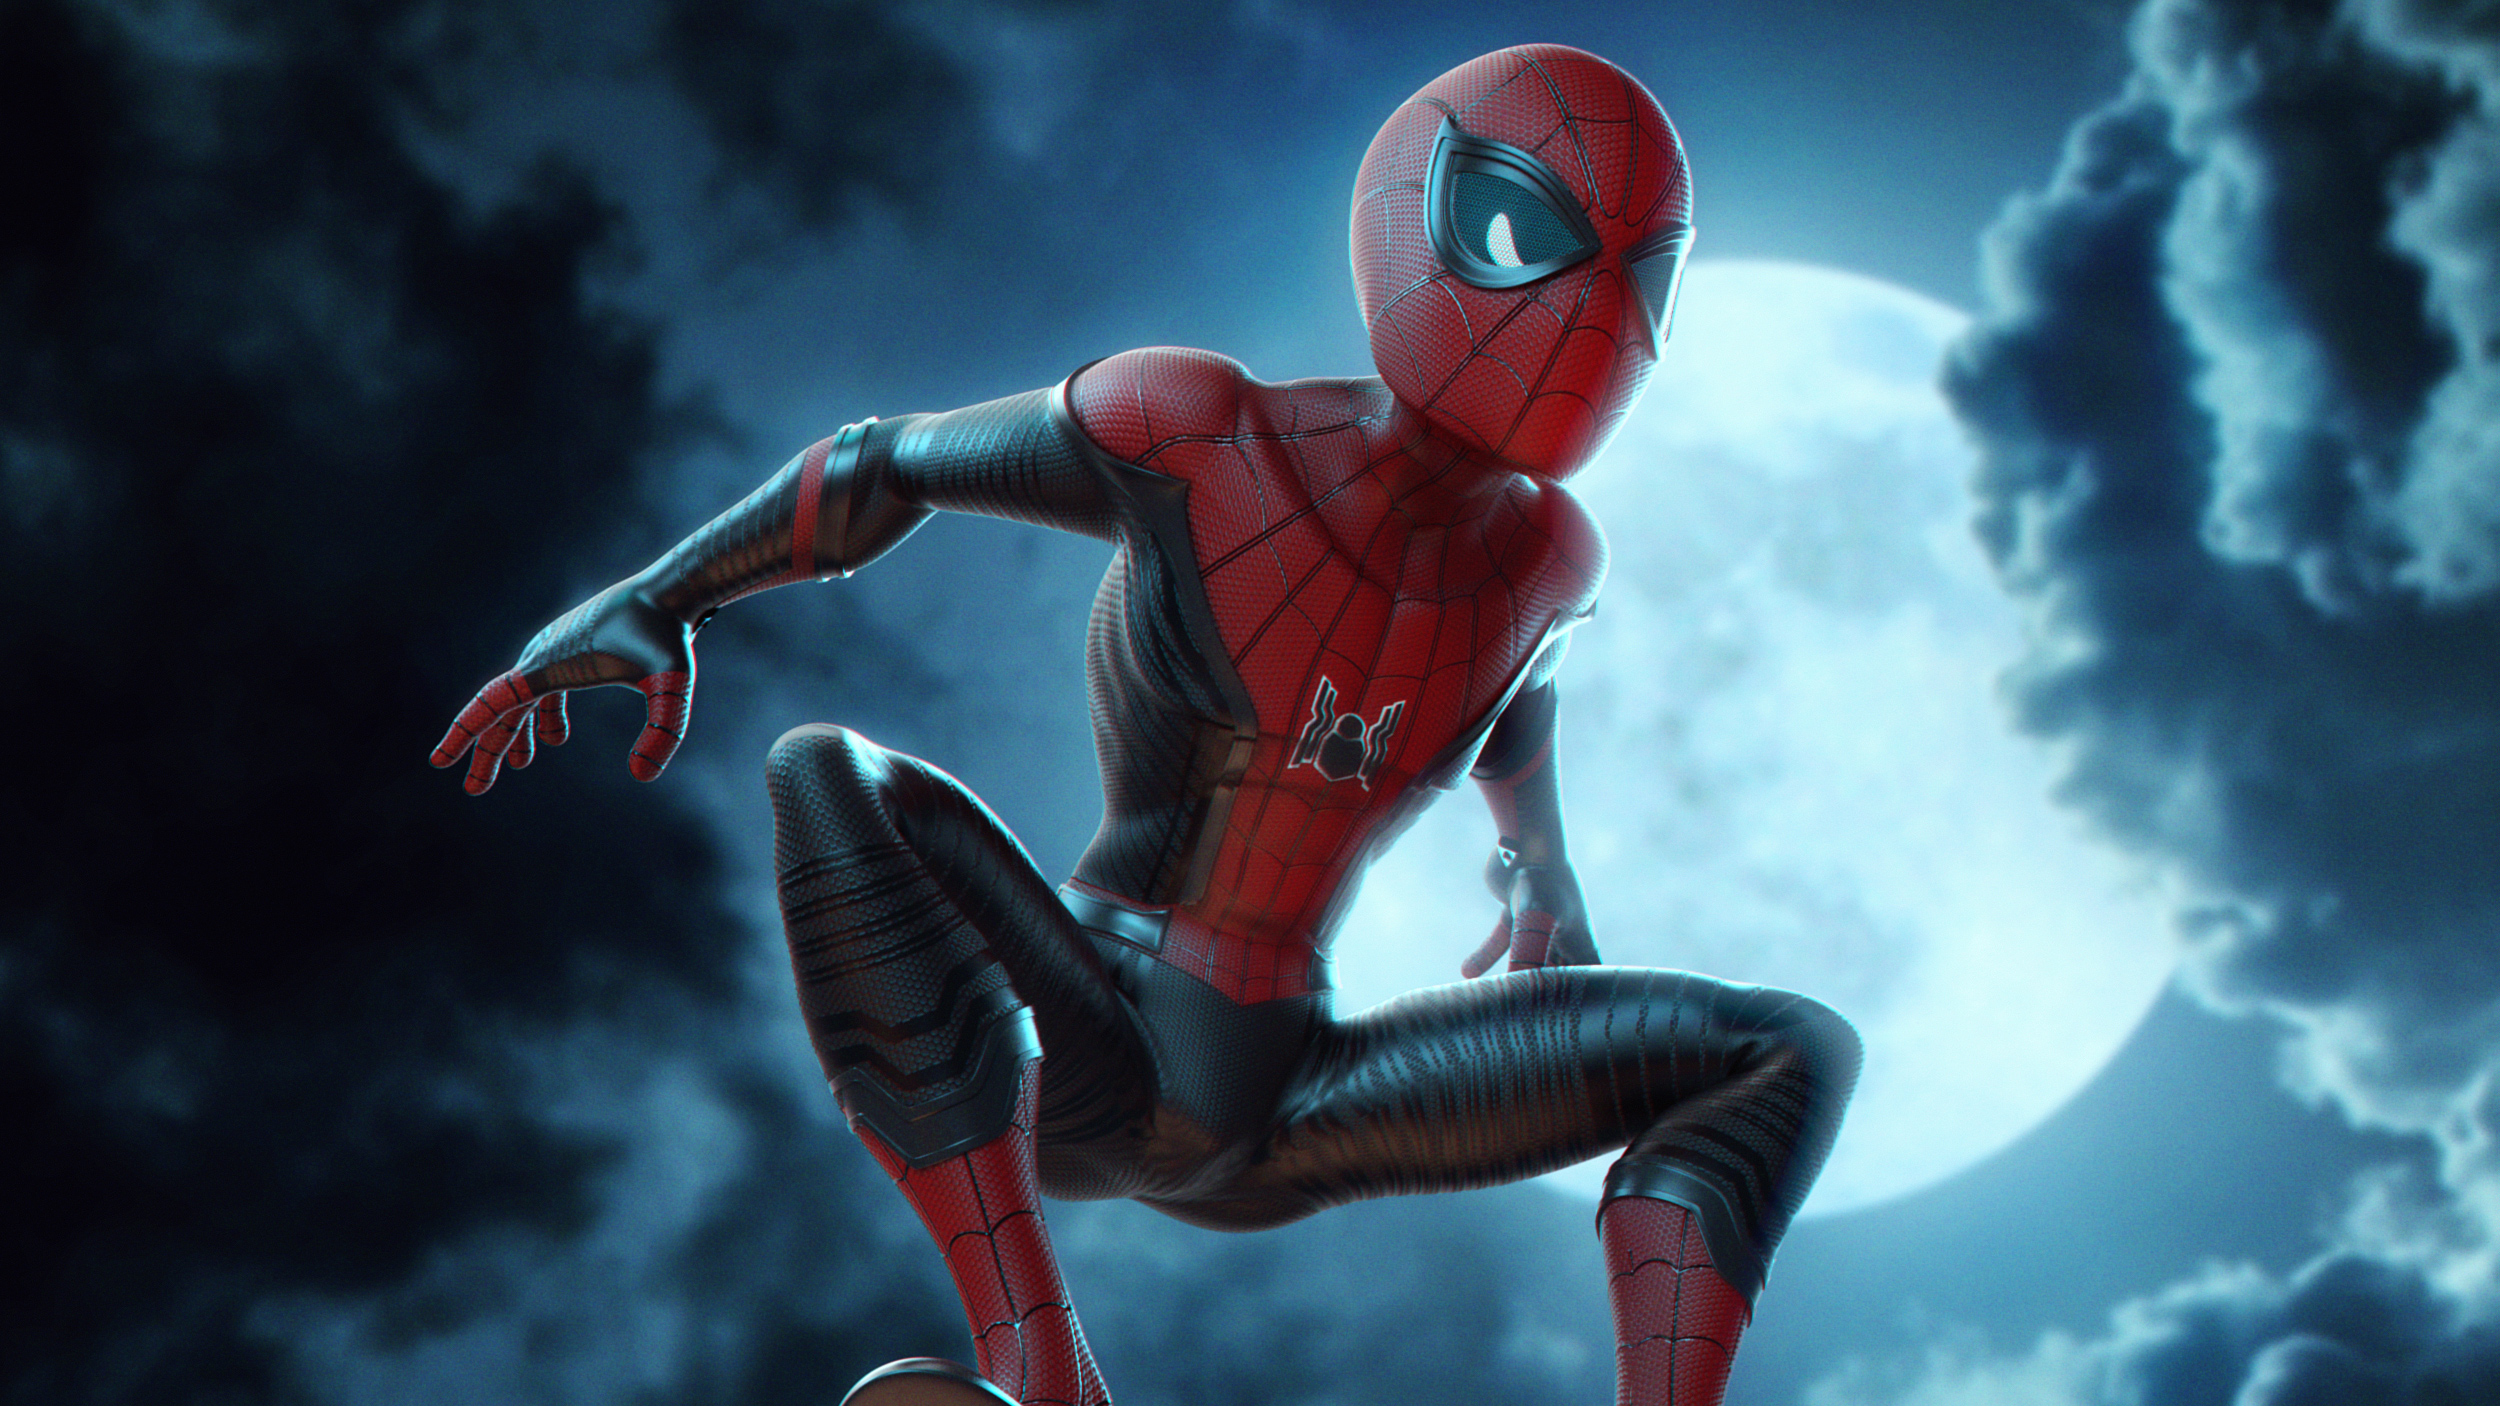 spiderman into the spider verse movie digital artwork 2018